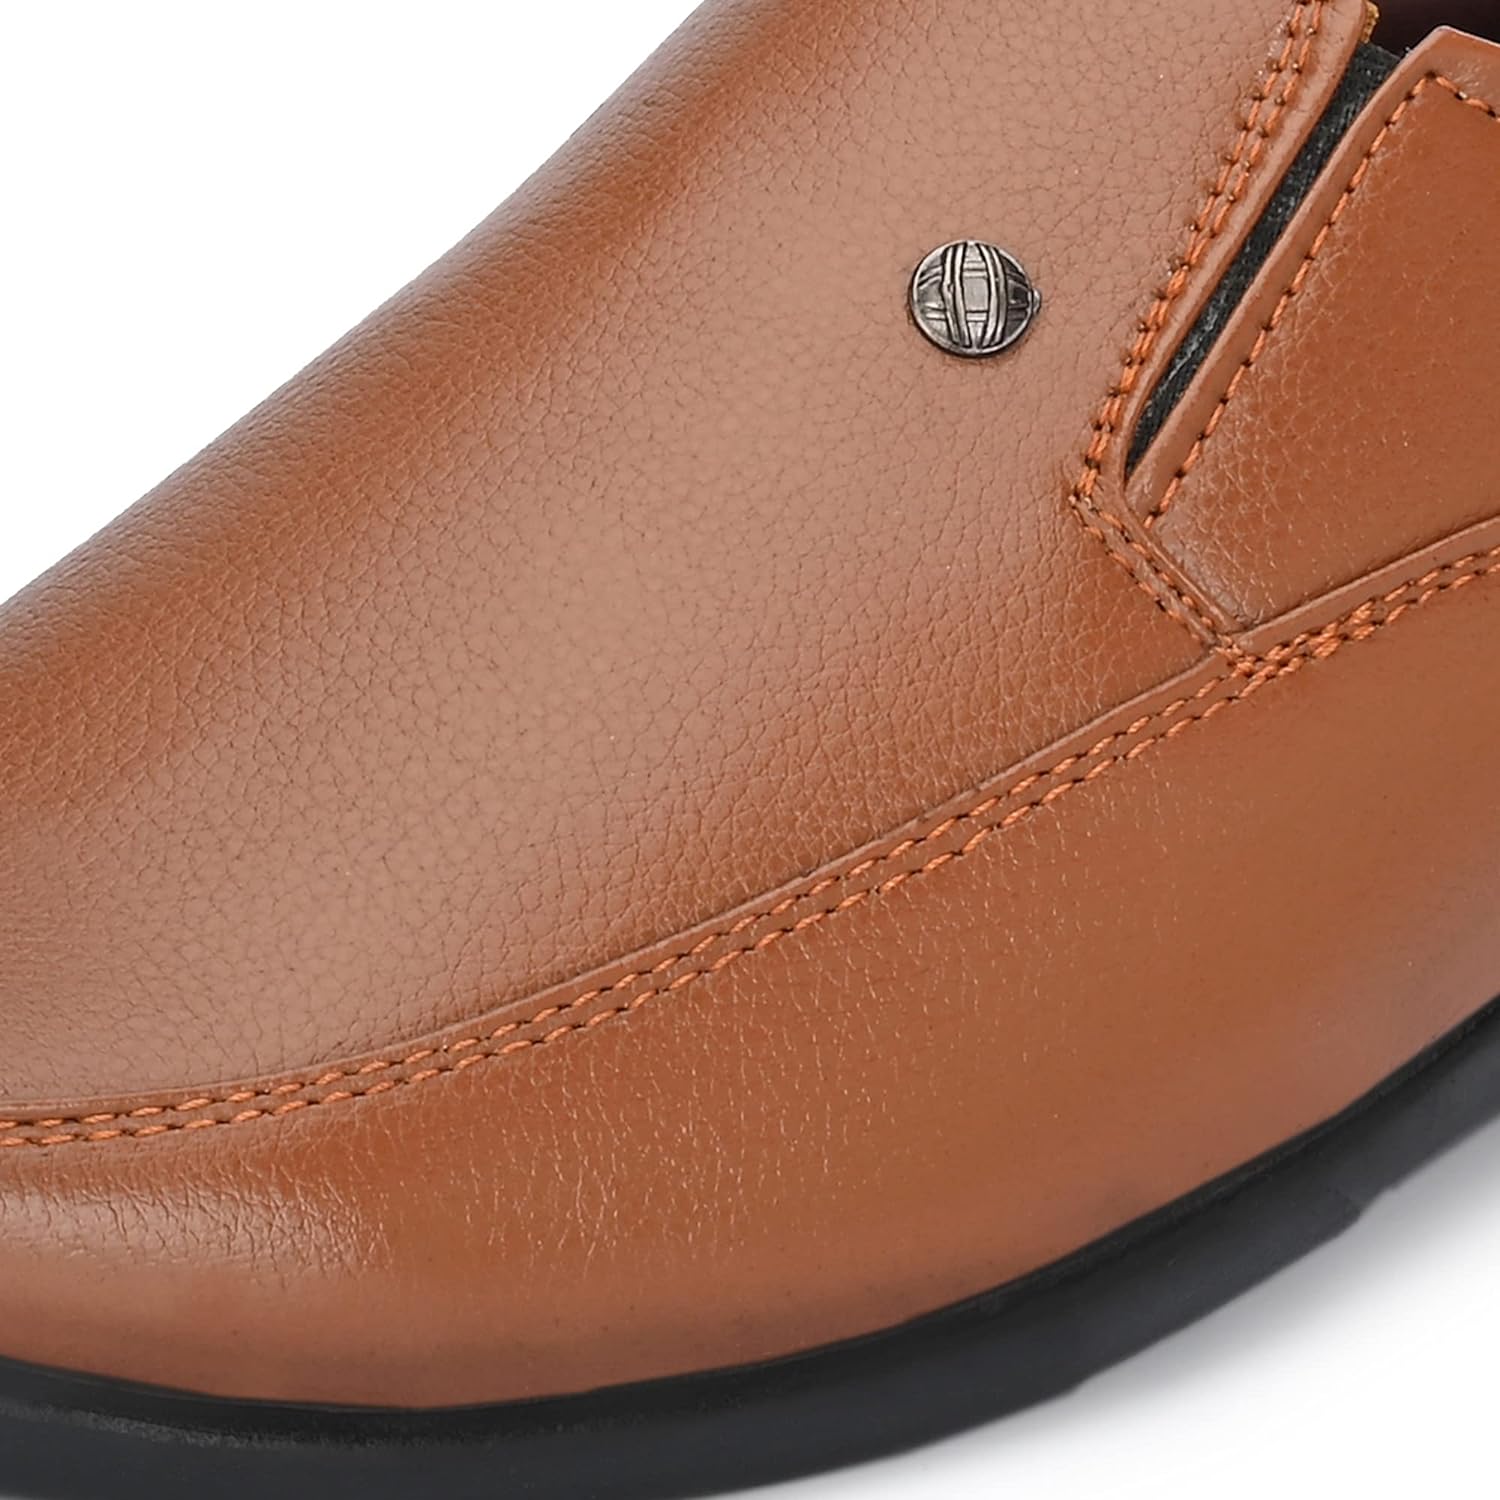 Centrino 8602-3 Men's Formal Shoe